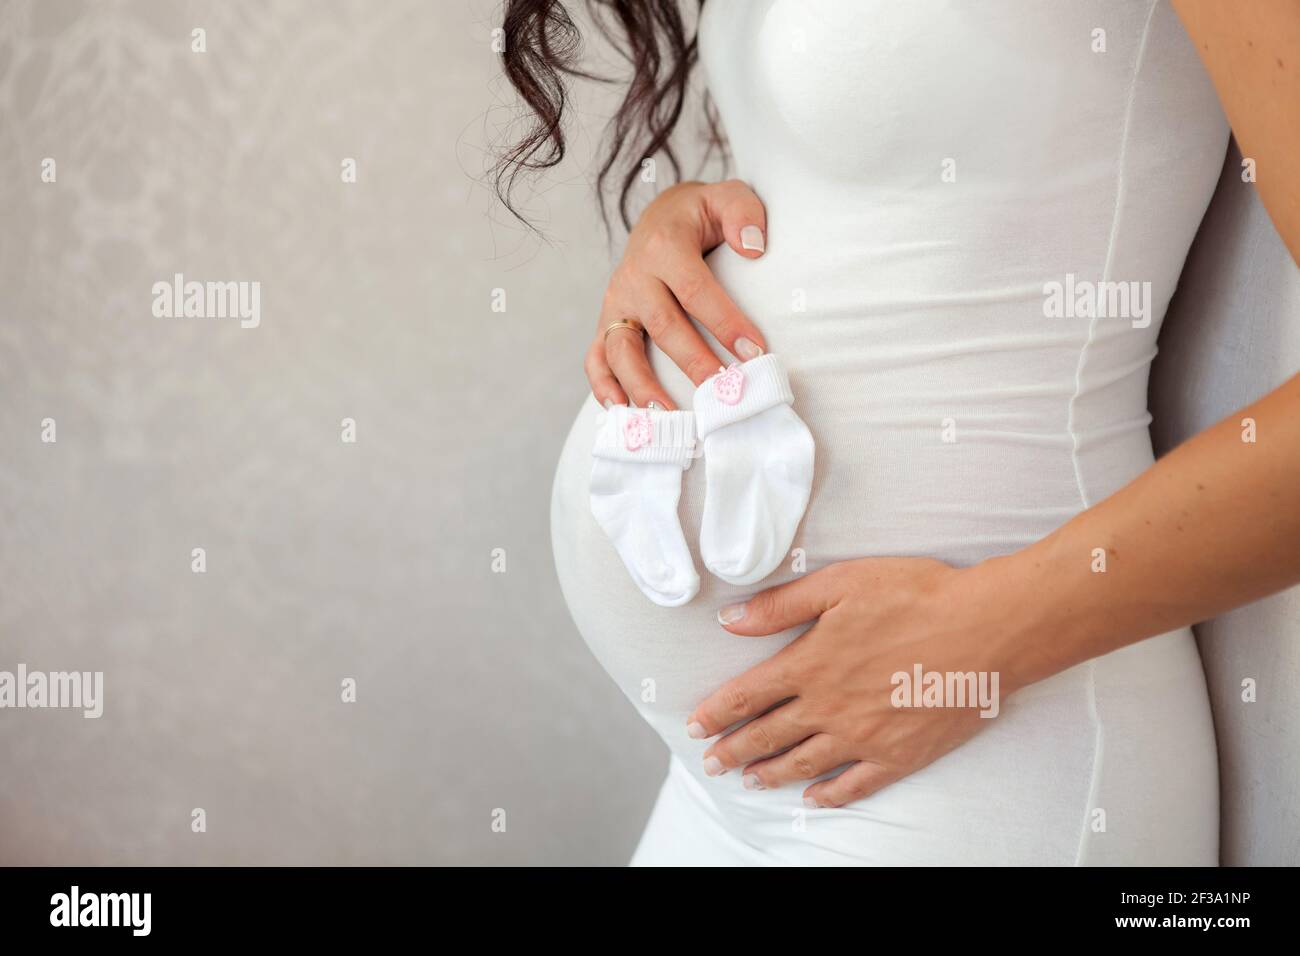 Schwangerer Bauch Nahaufnahme. Ein Paar hält den Bauch einer schwangeren Frau. Mutterschaftskonzept. Platz für Text kopieren. Neues Lebenskonzept. Stockfoto